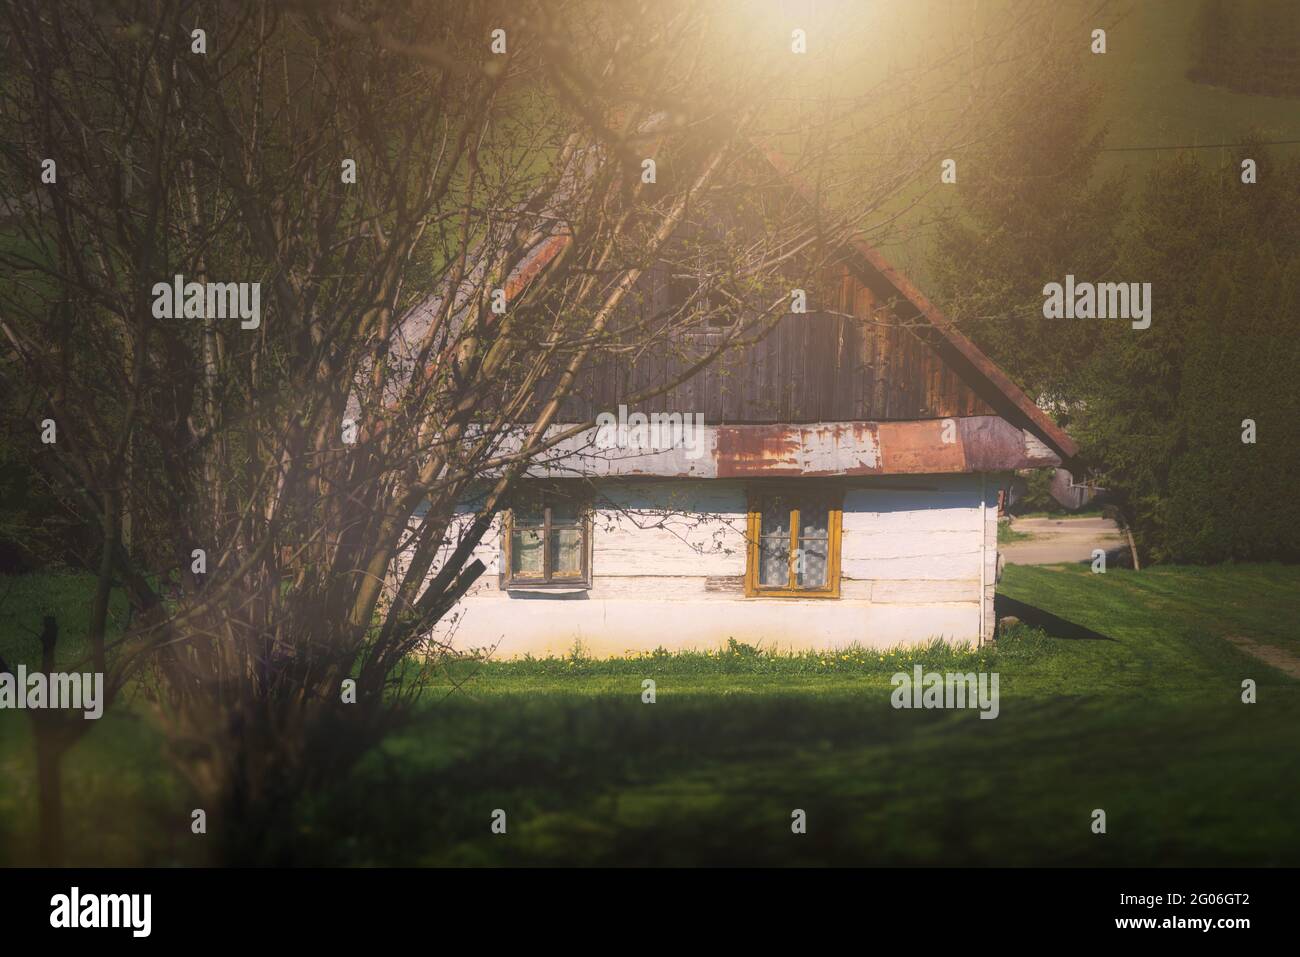 Eine alte Hütte in den Bergen. Historisches altes Holzhaus in den polnischen Bergen Bieszczady, Ferienhaus im Lemko-Stil, beliebt auch in der Ukraine. Stockfoto